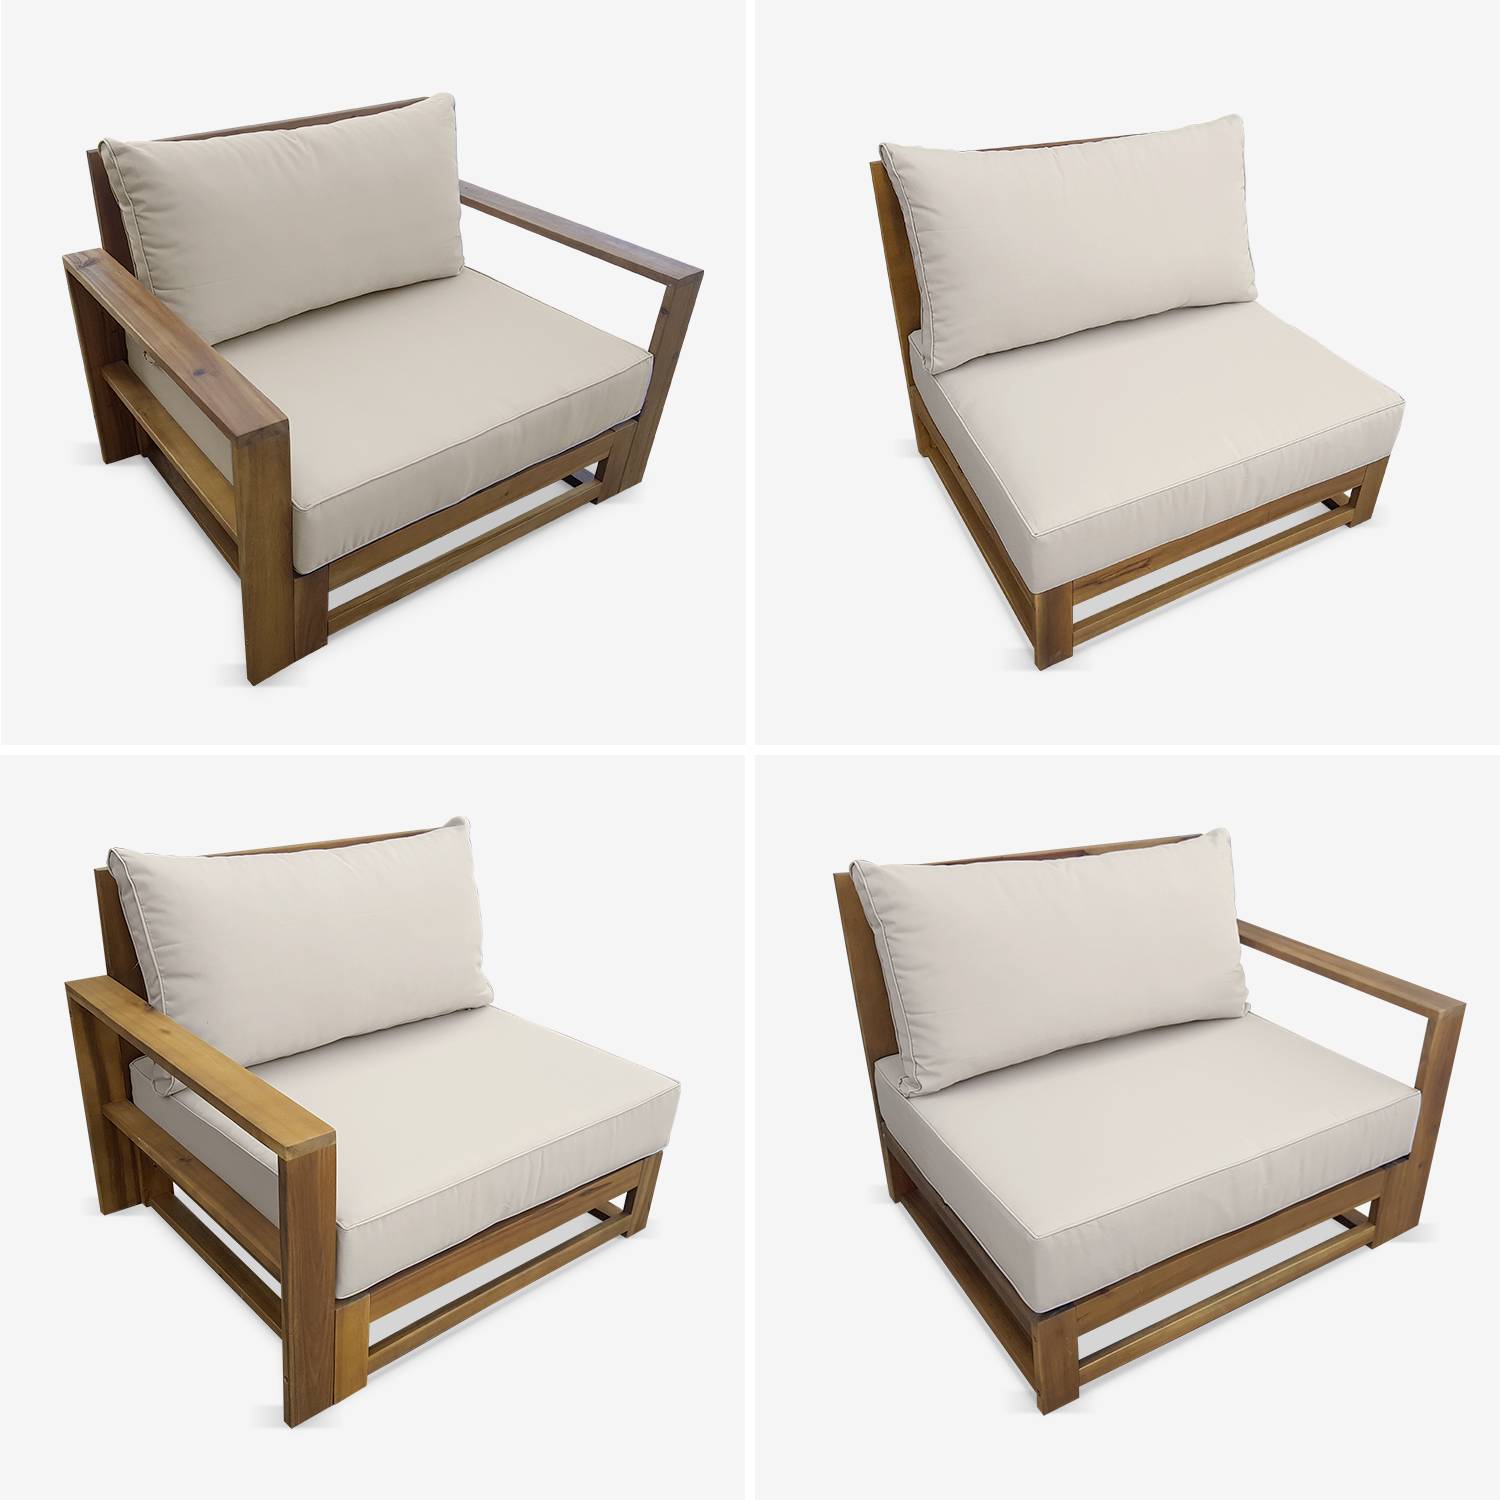 Gartengarnitur aus Holz 5 Sitze - Mendoza - beigefarbene Kissen, Sofa, Sessel und Couchtisch aus Akazie, 6 zusammenstellbare Teile, Design Photo4